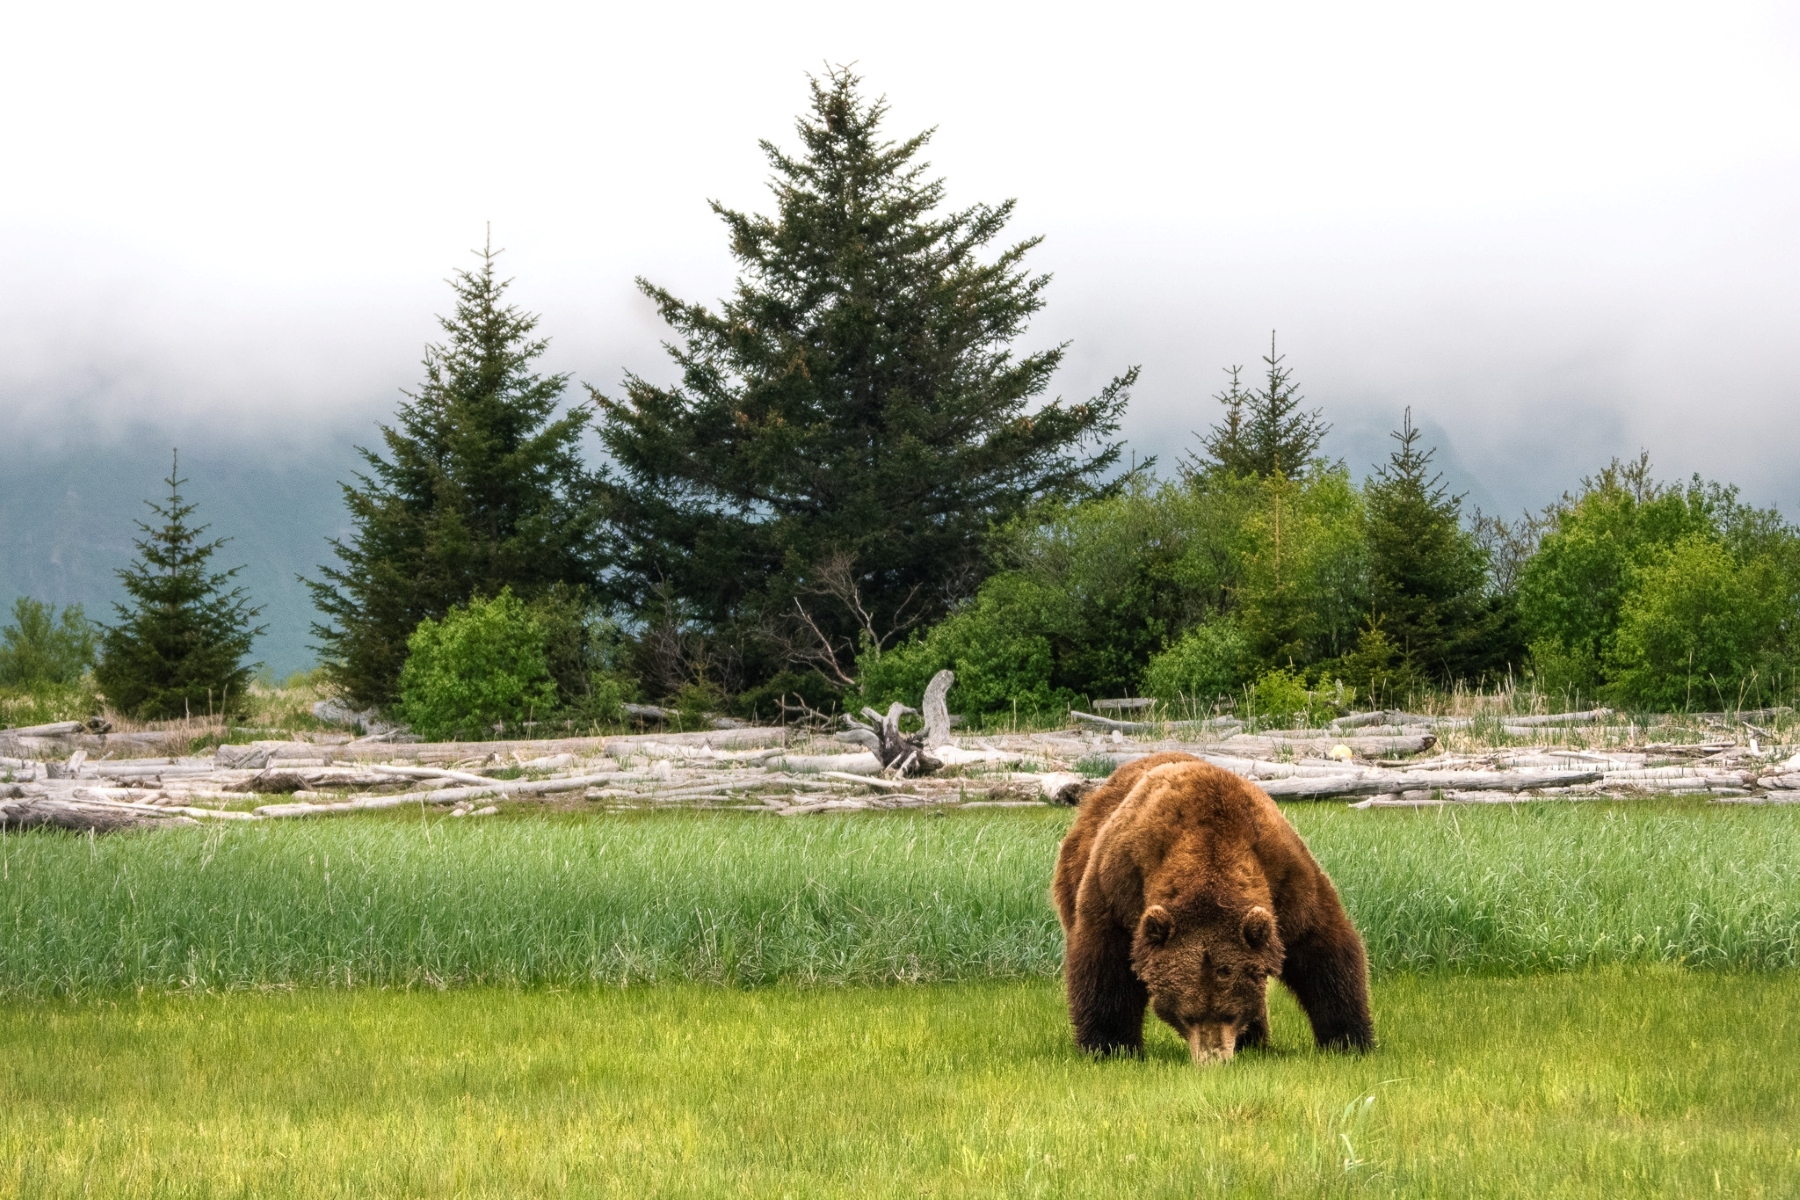 Alaska Bear Viewing Tours Jaime Hammond 6